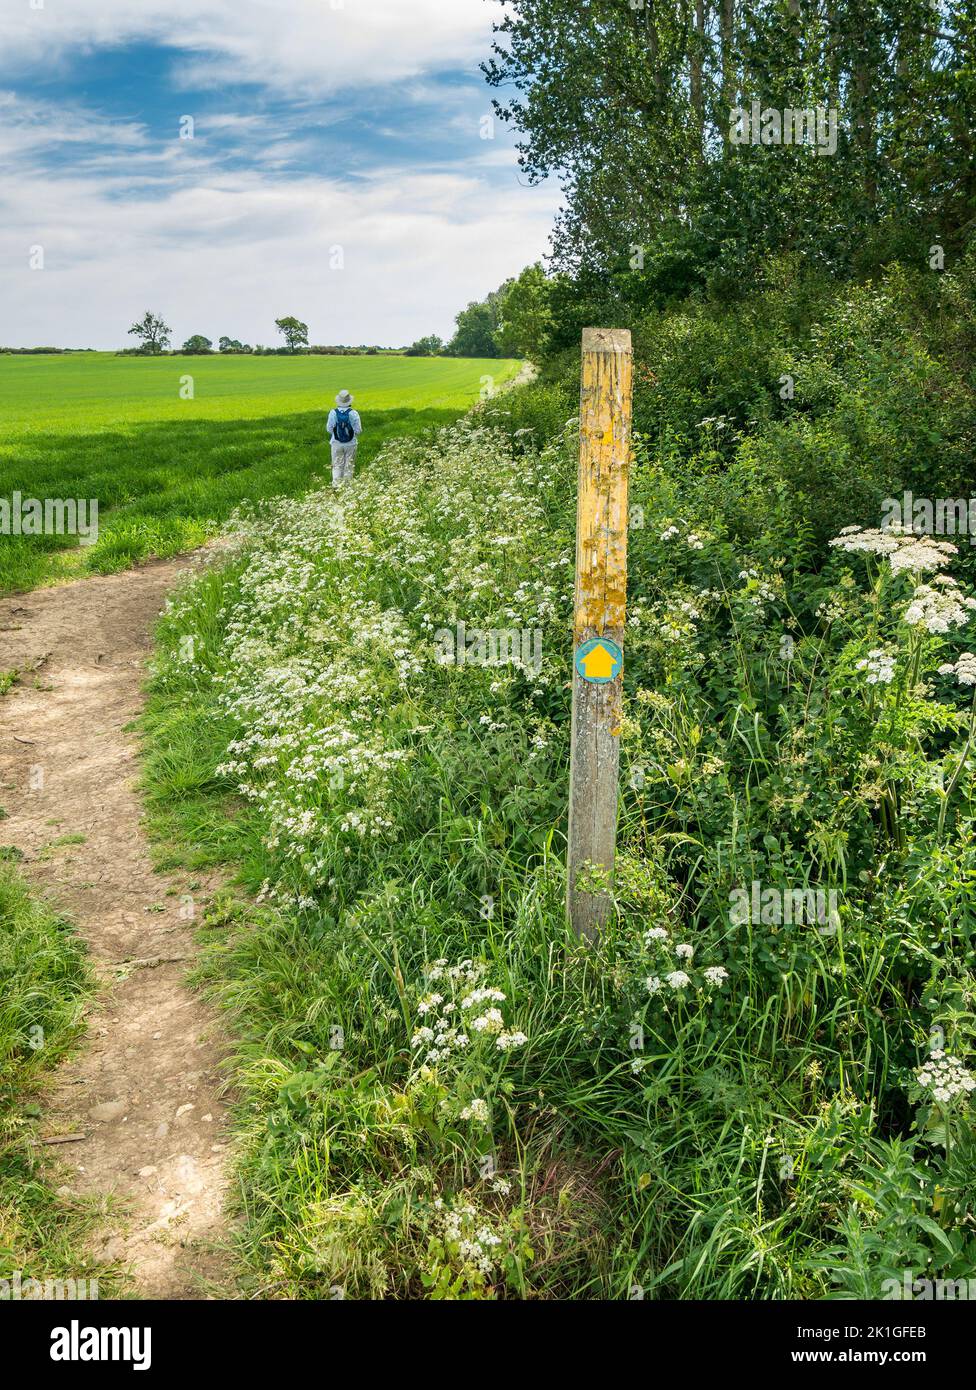 La campagna del Leicestershire cammina lungo il sentiero con un segnaposto giallo, una rambler femminile e fiori di prezzemolo. Foto Stock